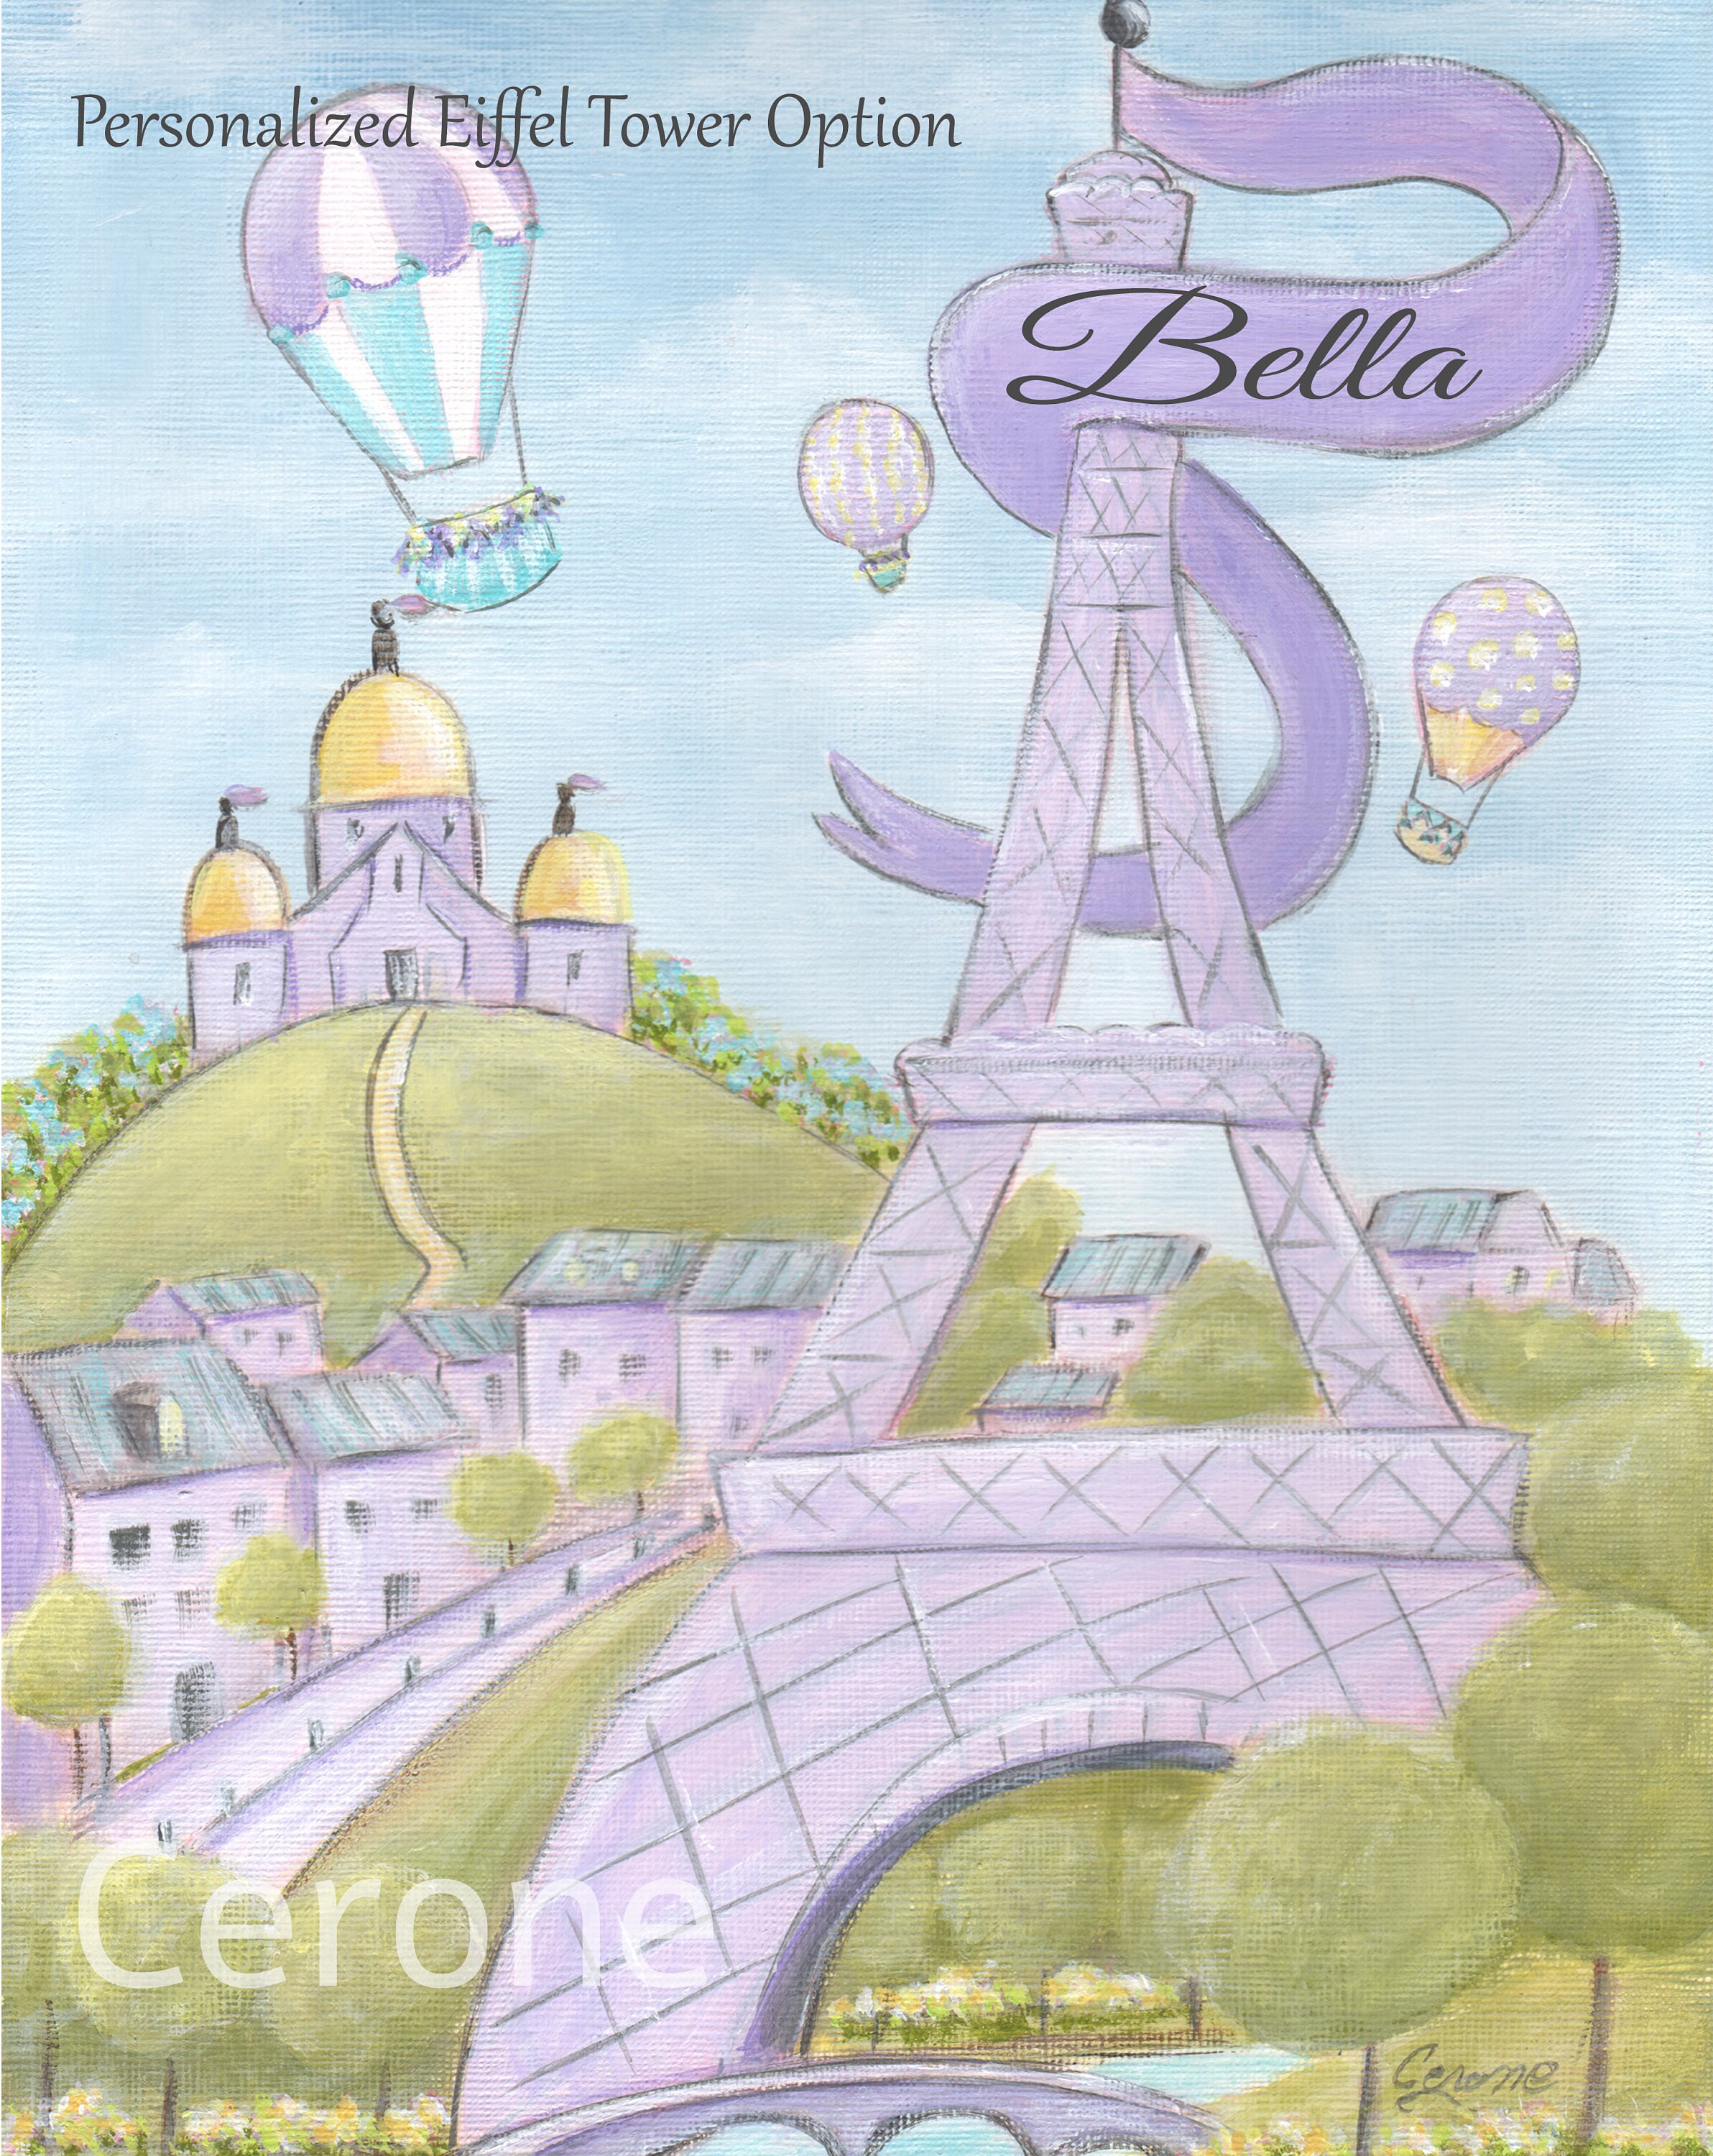 Impresión o lienzo personalizado de Paris Cafe, arte de pared con nombre de  bebé personalizado, regalo parisino, decoración de guardería francesa, La  Maison Rose, Montmartre París -  México